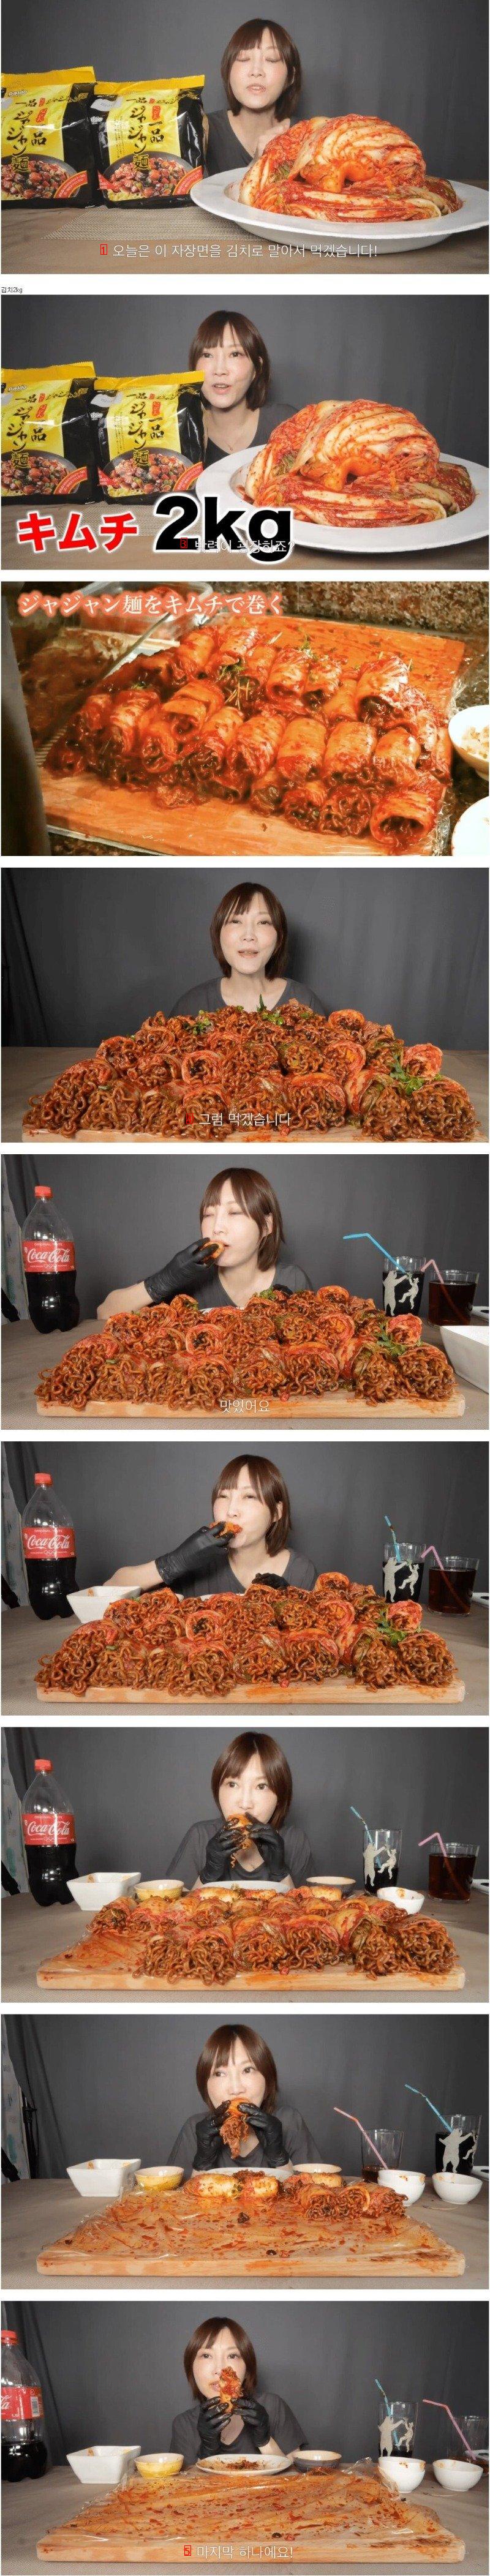 ジャージャーラーメンにキムチを入れて食べる日本のユーチューバーjpg